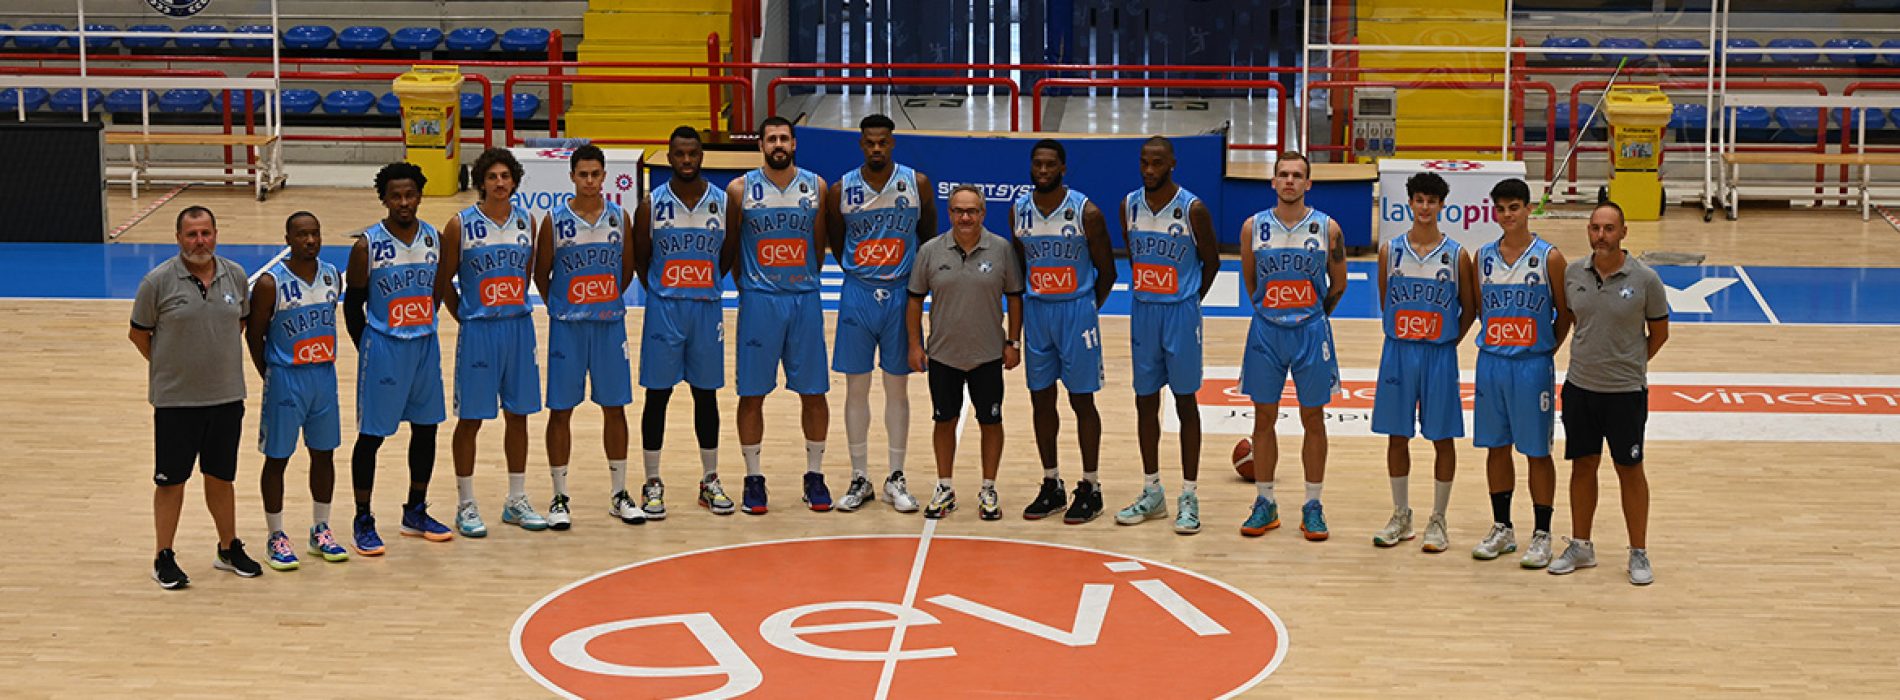 Gevi Napoli Basket: al via la stagione 2021/22